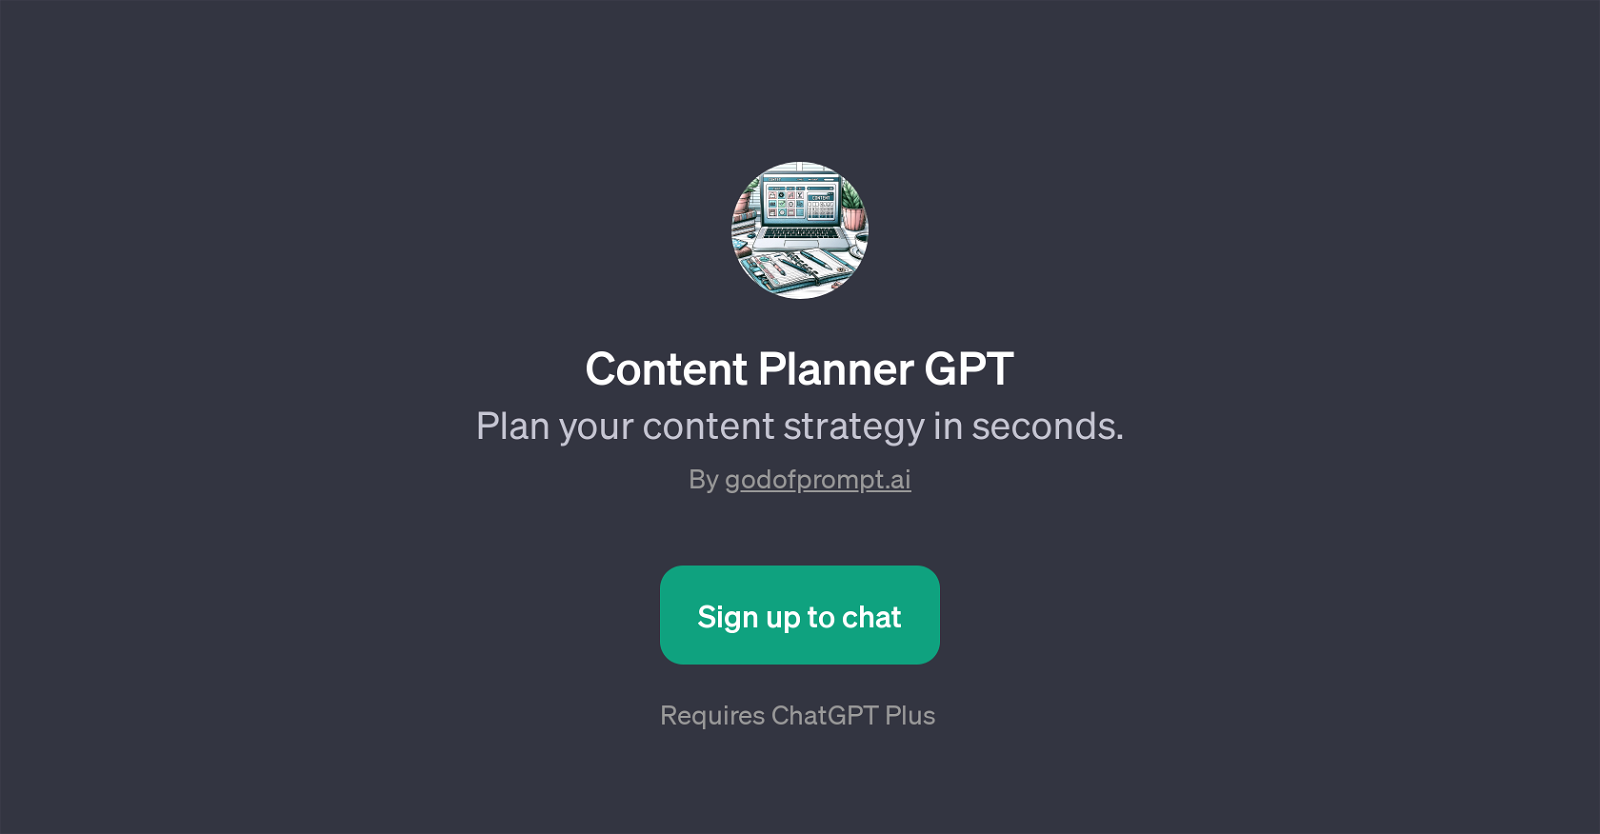 Content Planner GPT website